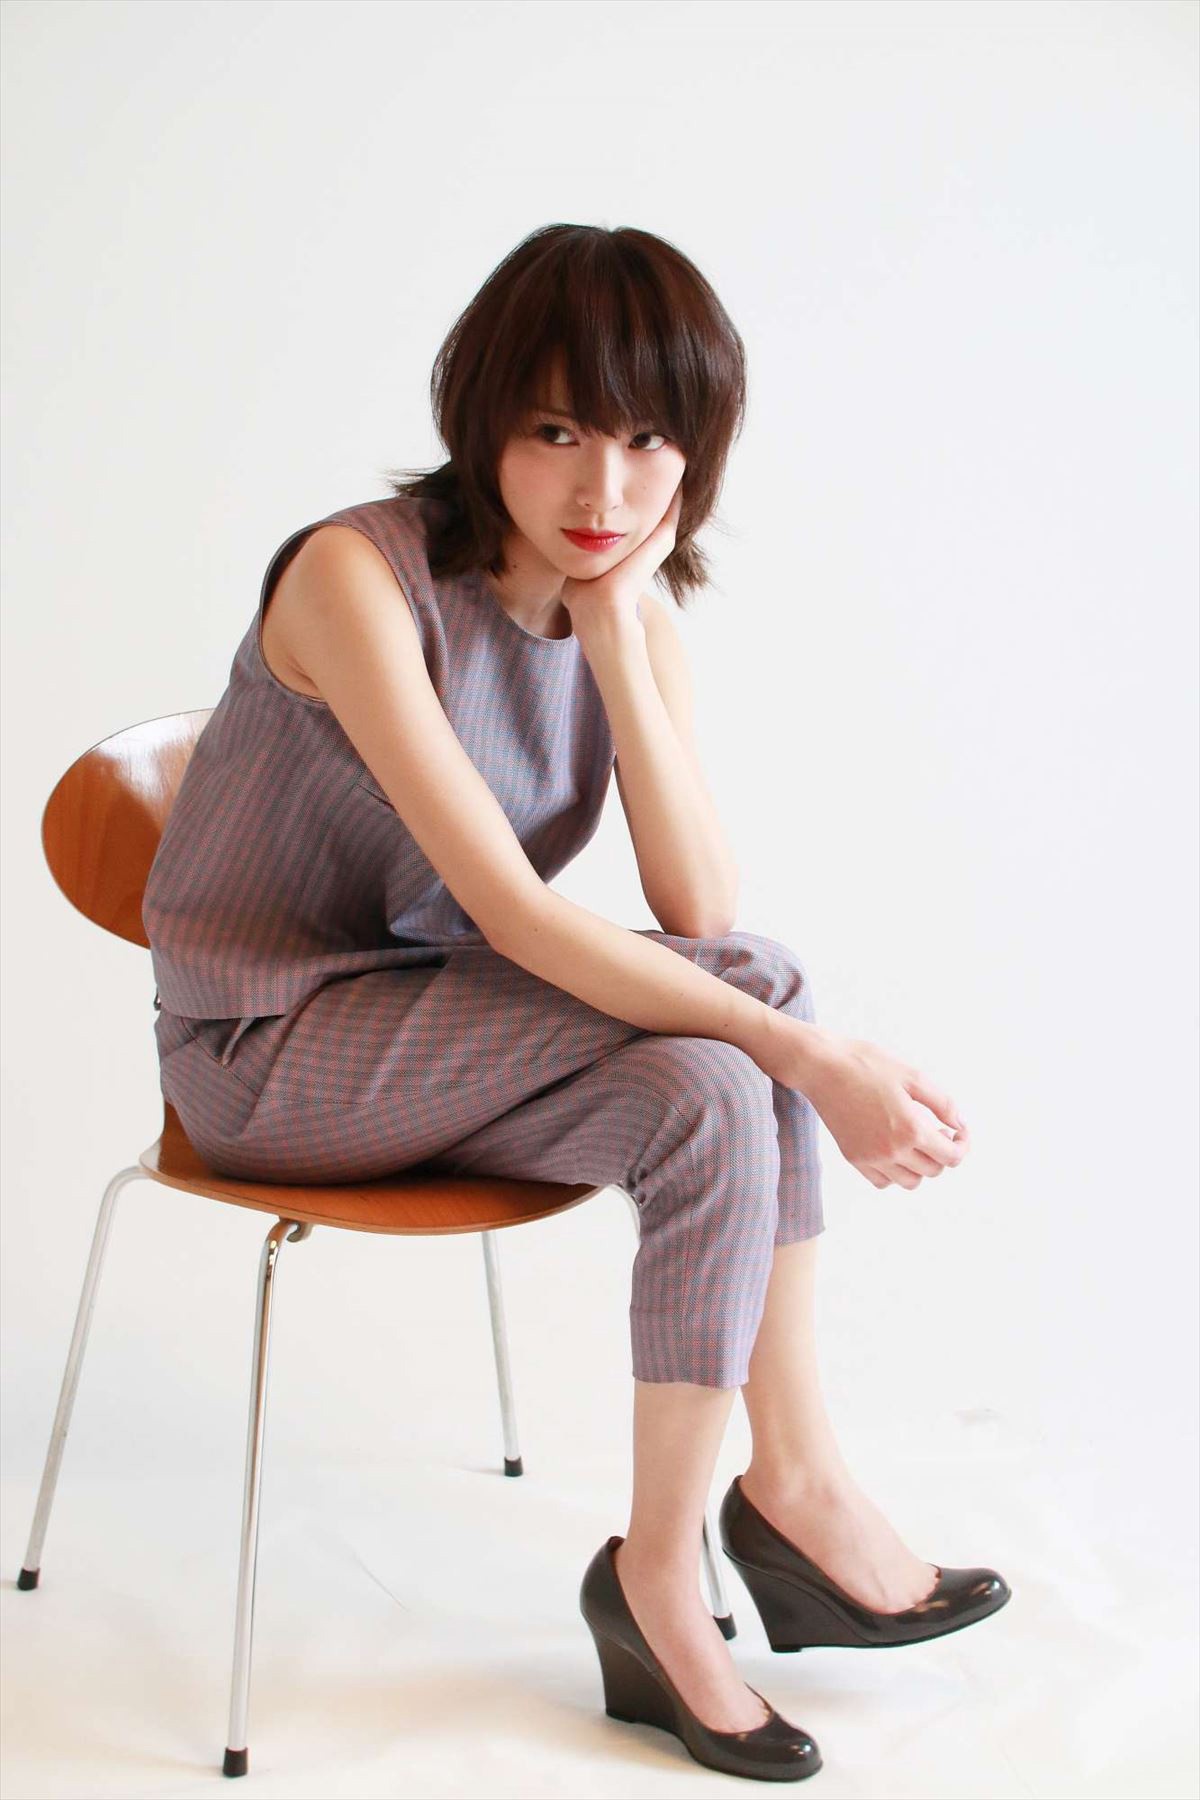 戸田恵梨香が描く“30代の自分”、人として「経験を積みたい」